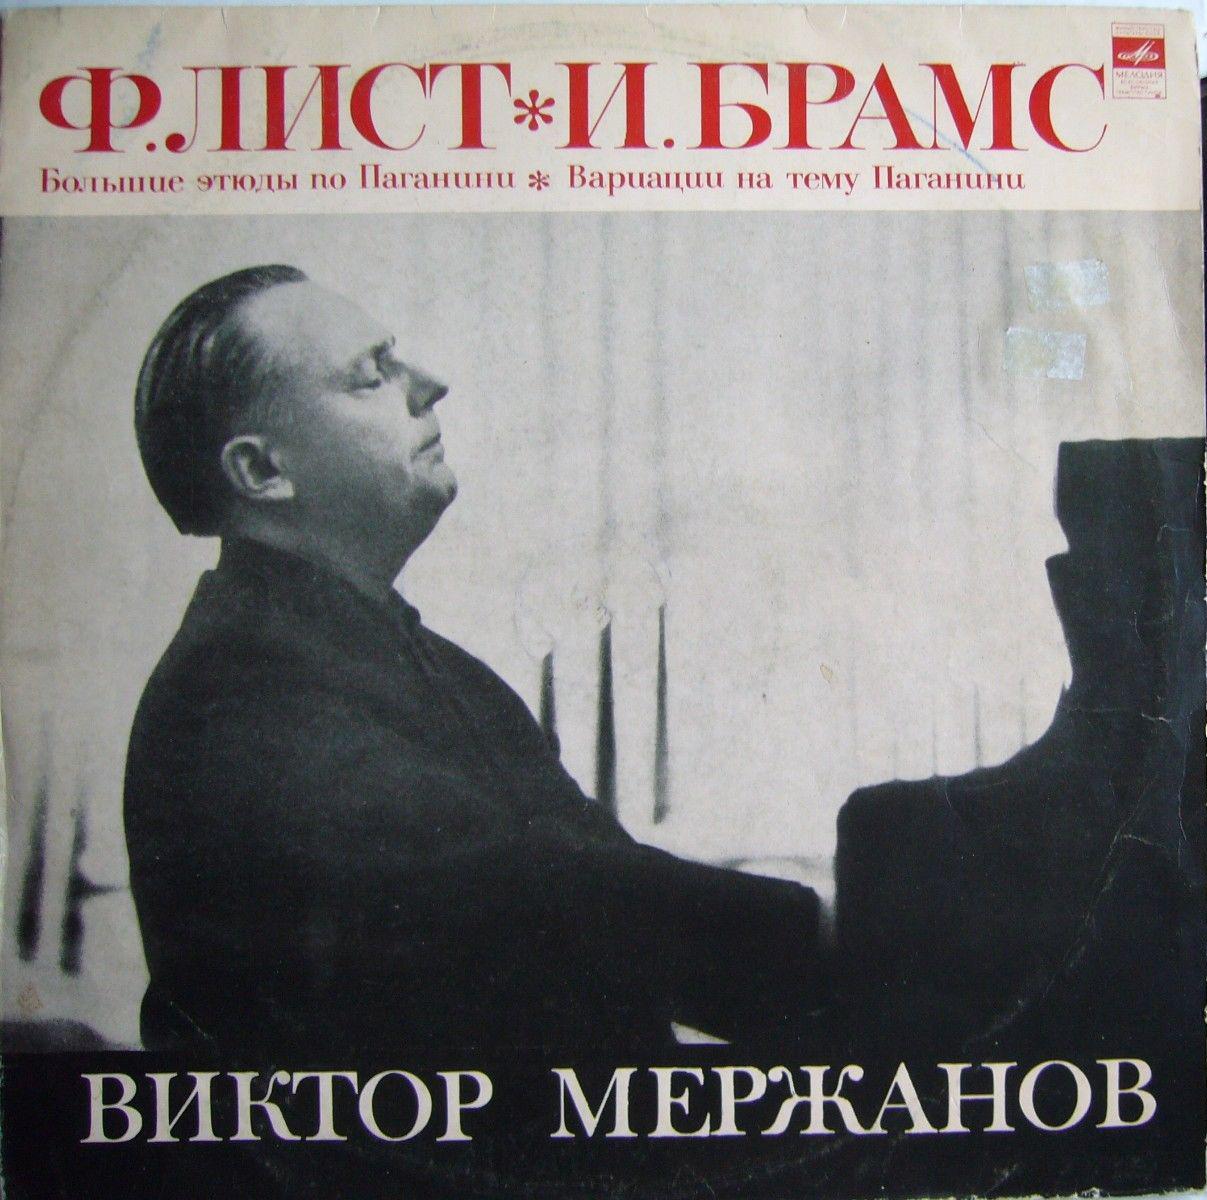 Виктор МЕРЖАНОВ, фортепиано